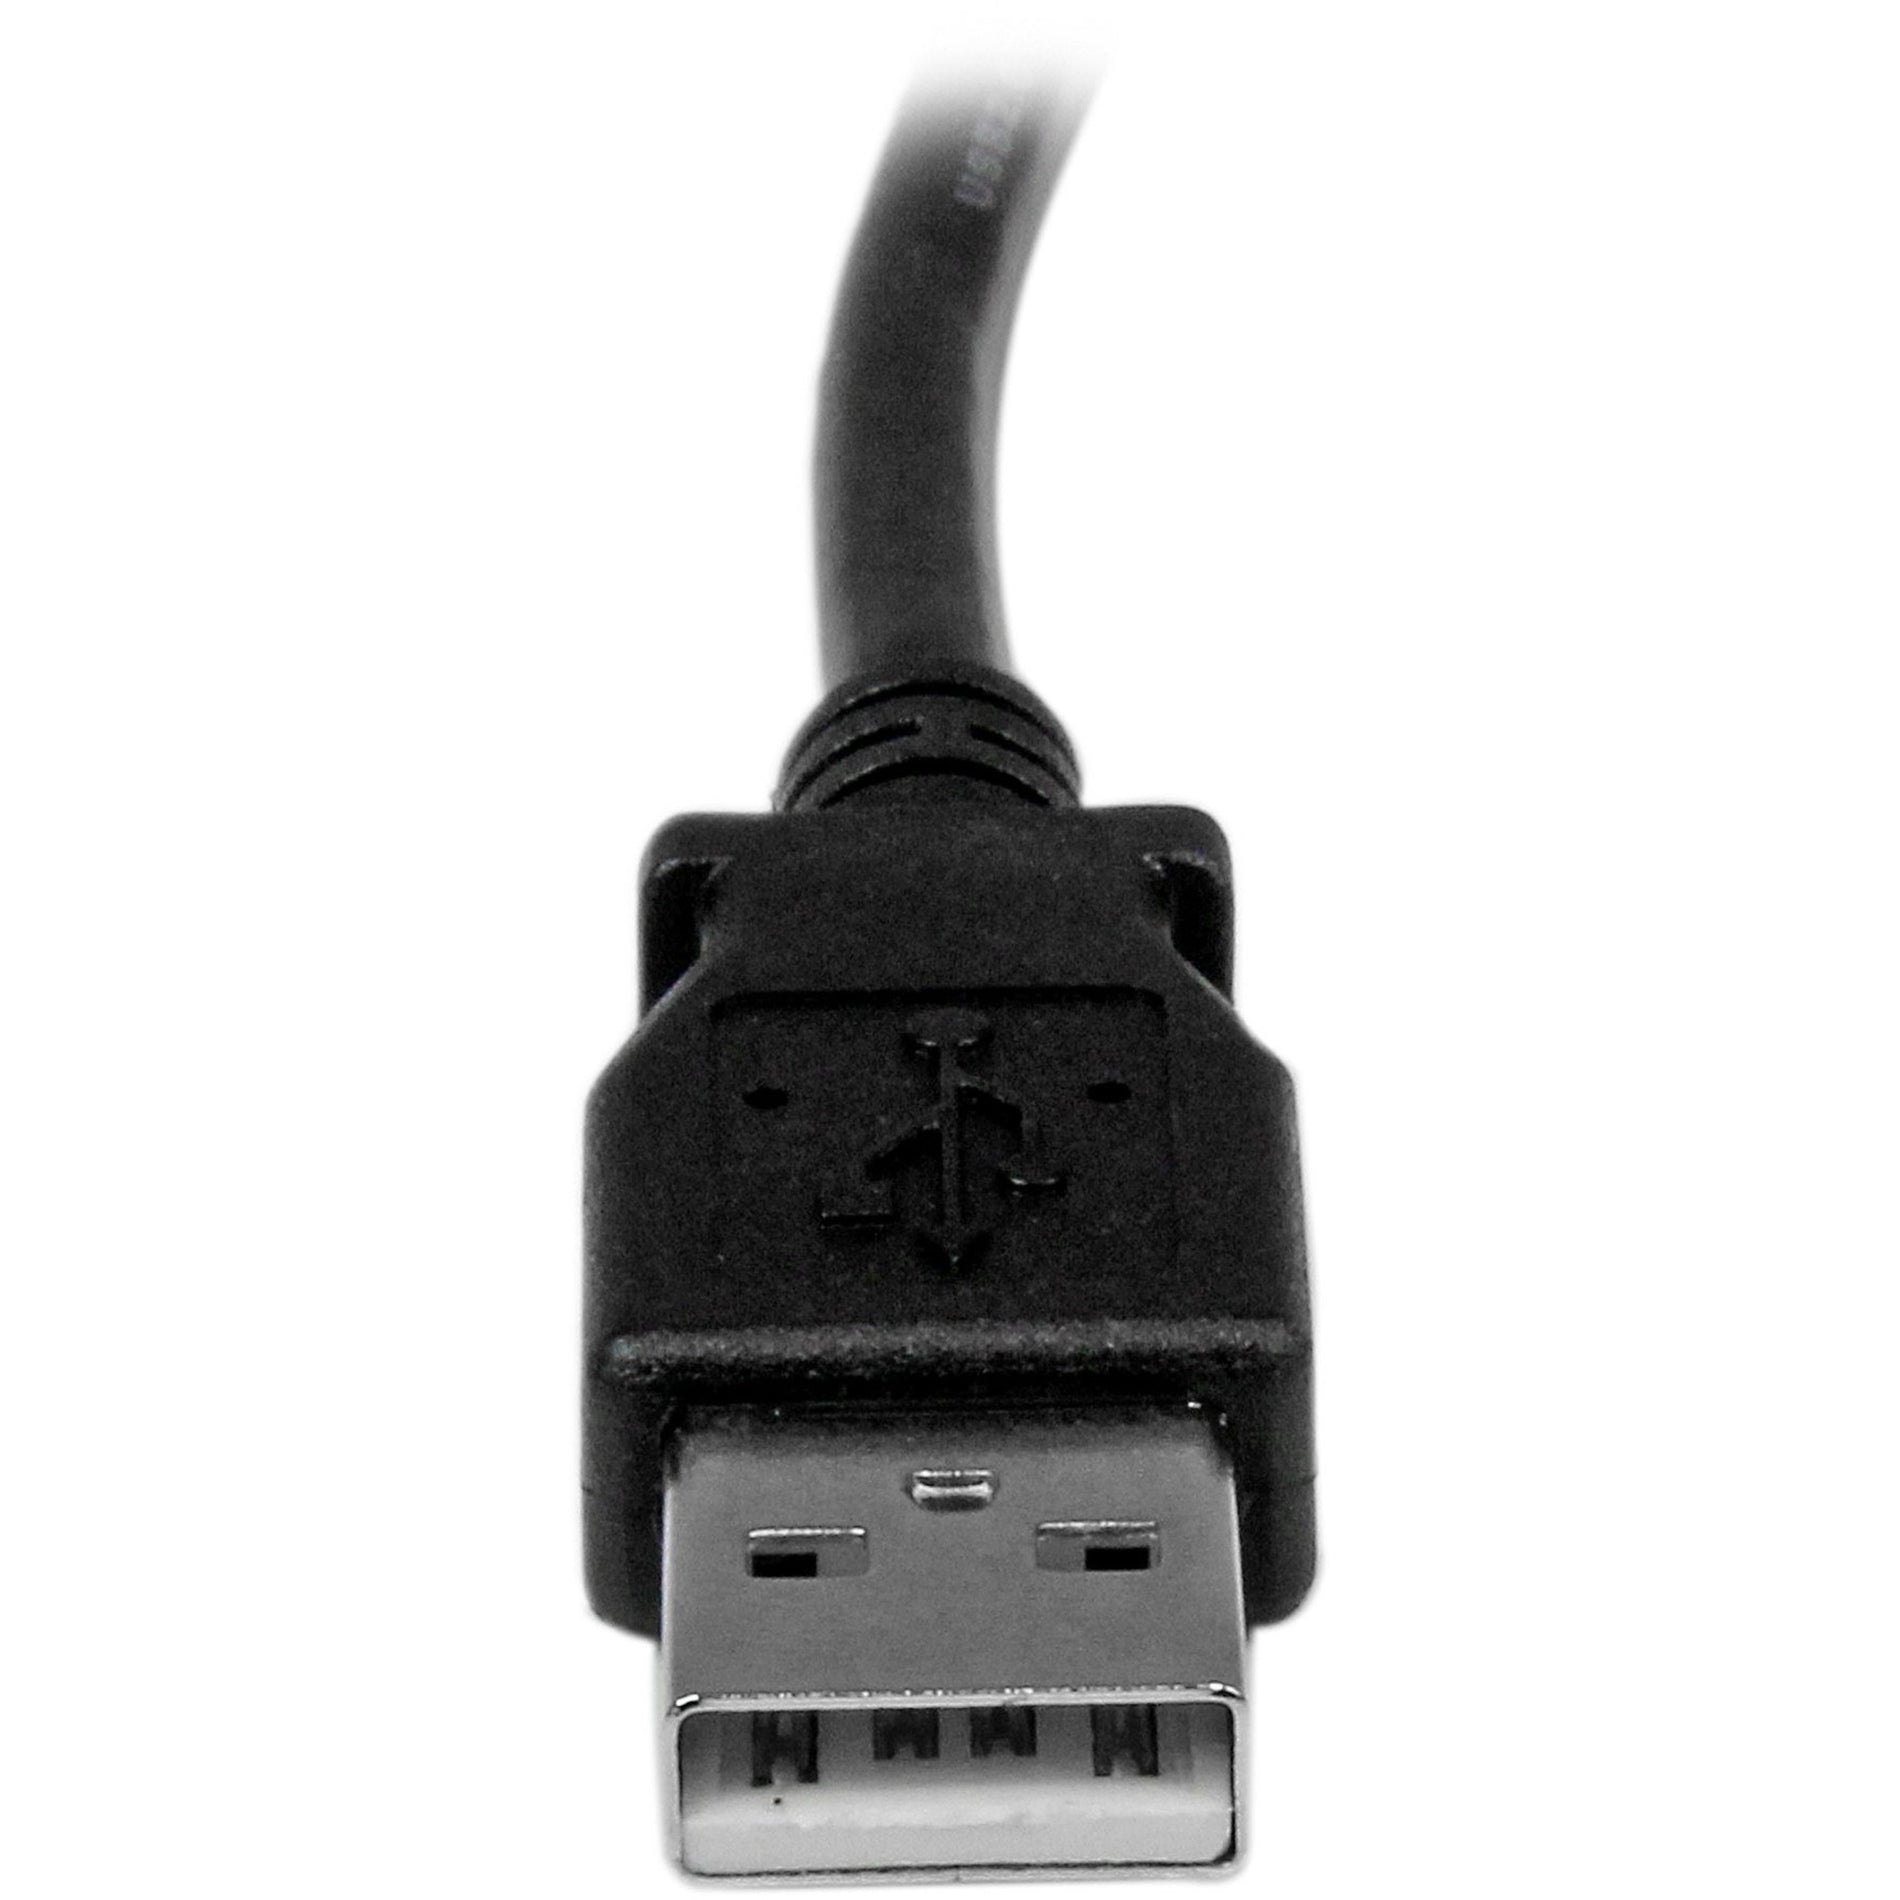 Marca: StarTech.com   Cable de transferencia de datos USBAB3MR de 3 m USB 2.0 A a B de ángulo recto - M/M 9.84 ft